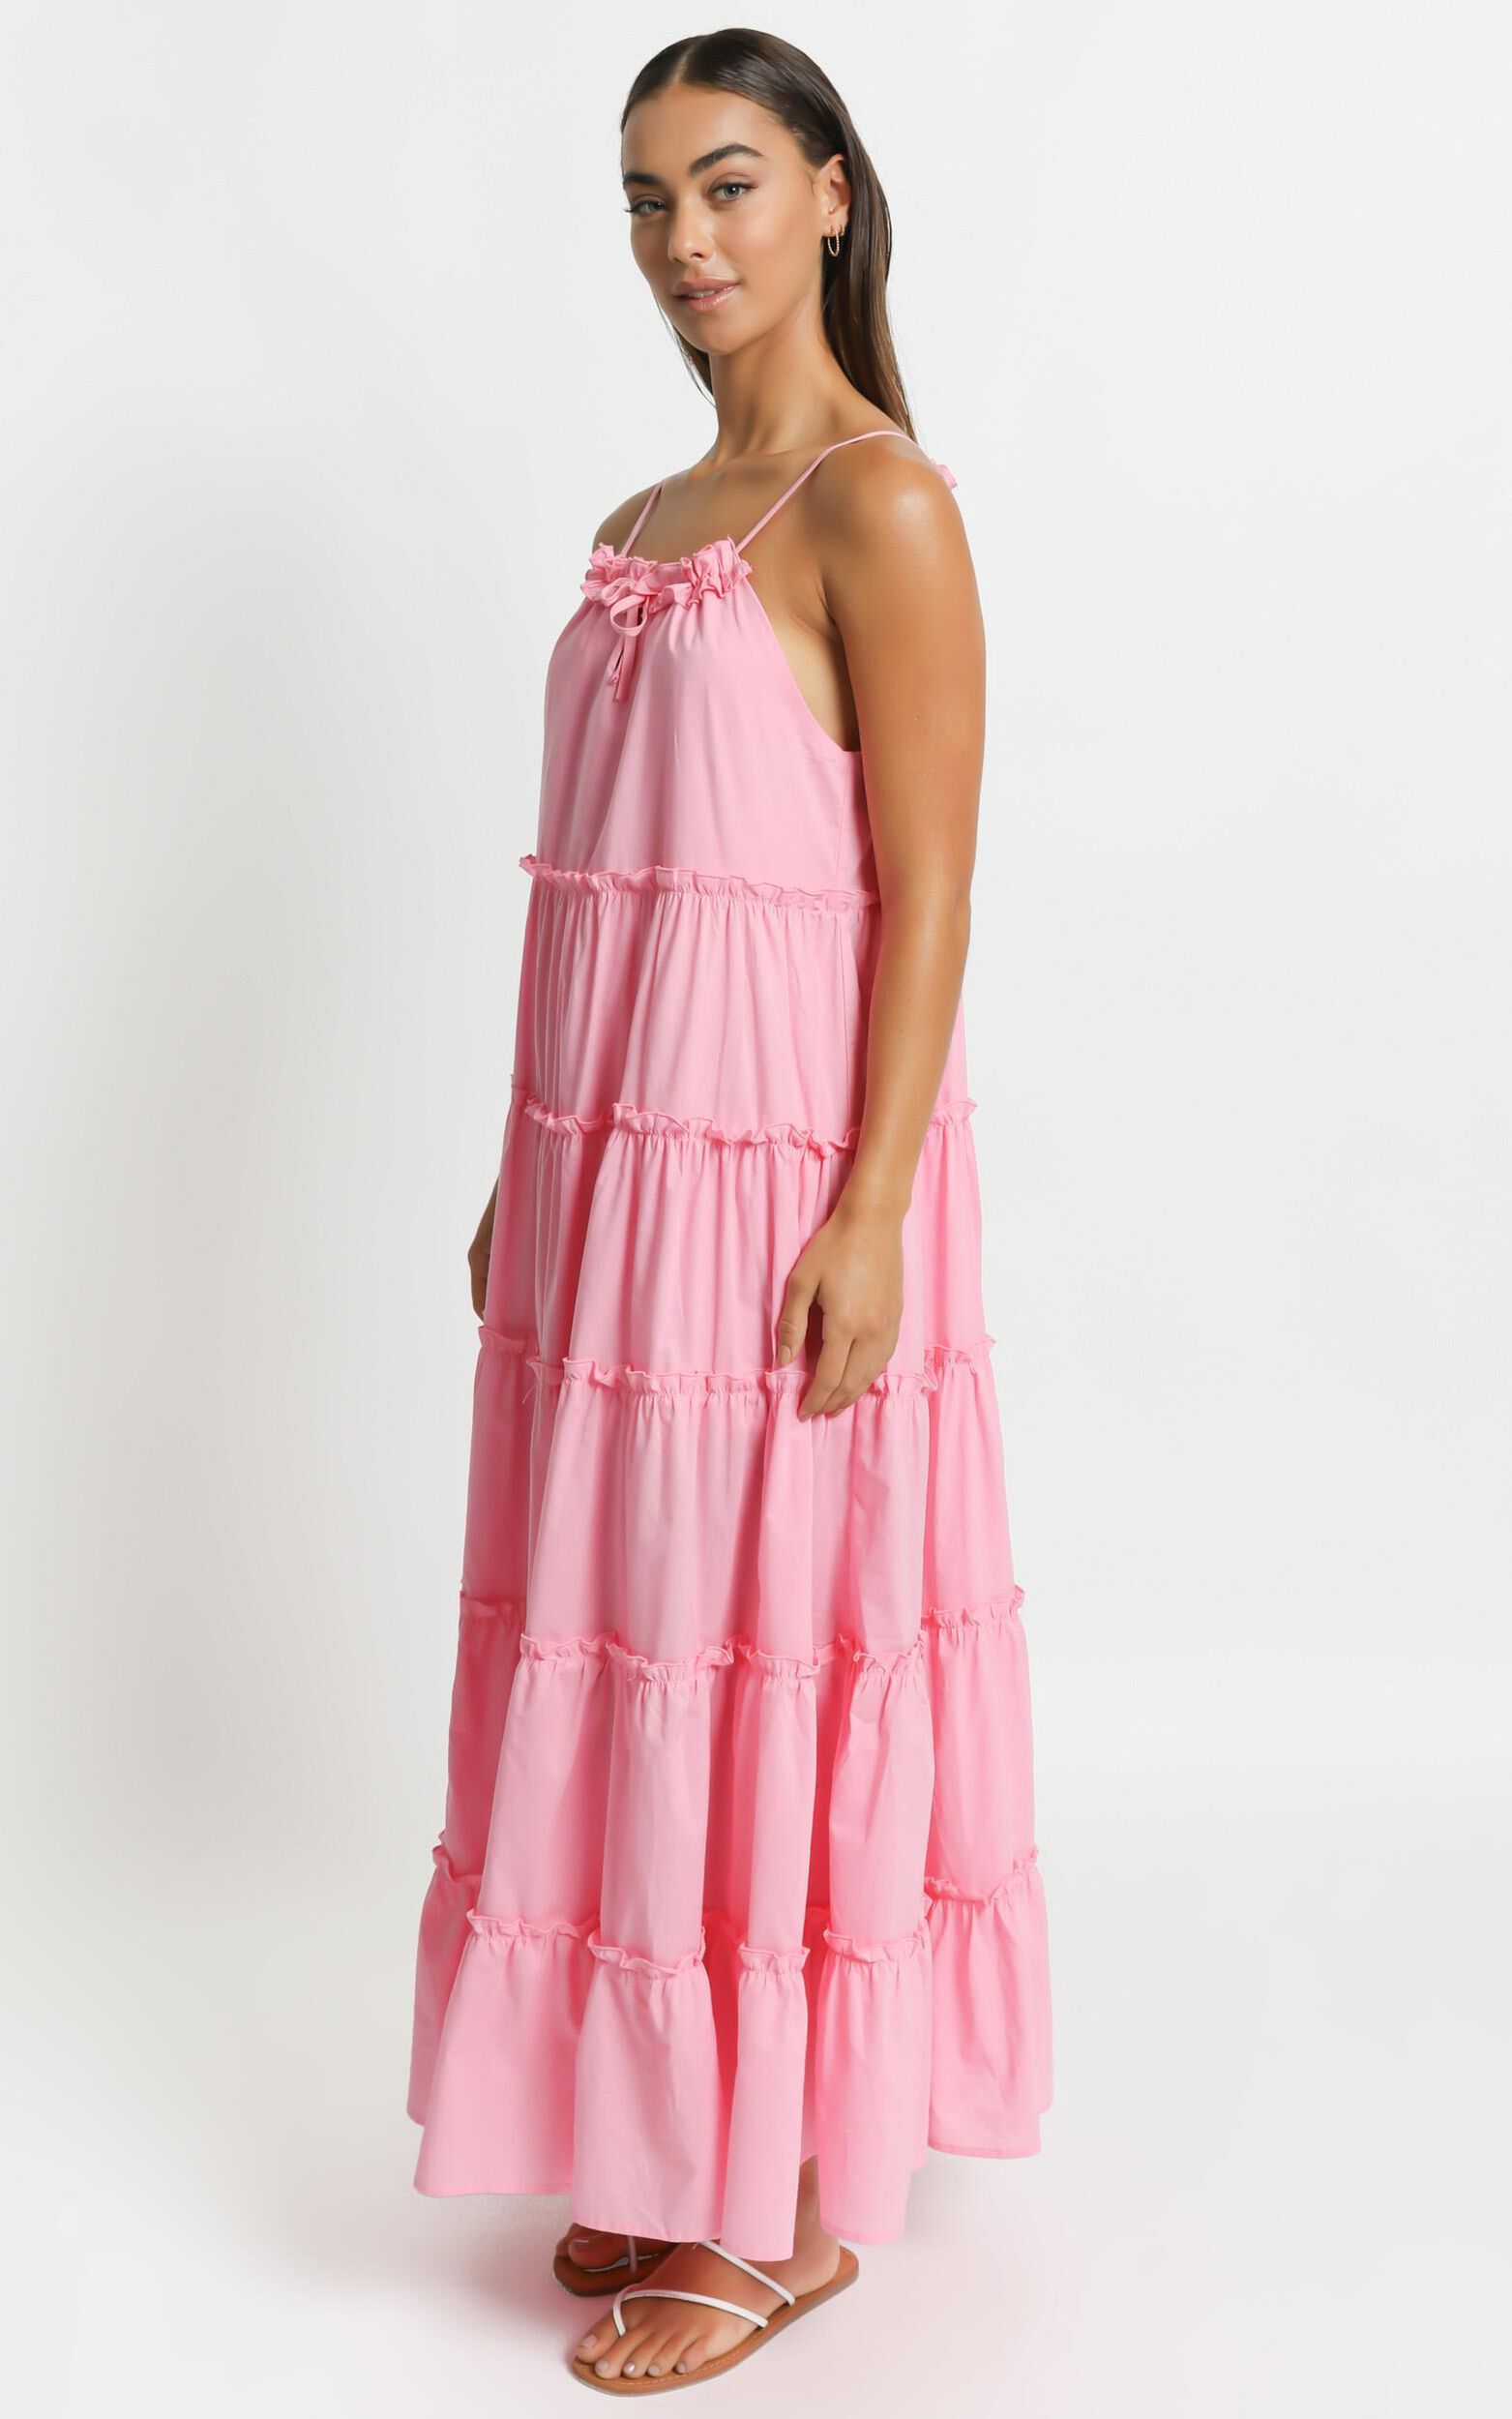 Charly Pink Maxi Dress w/ Ruffles